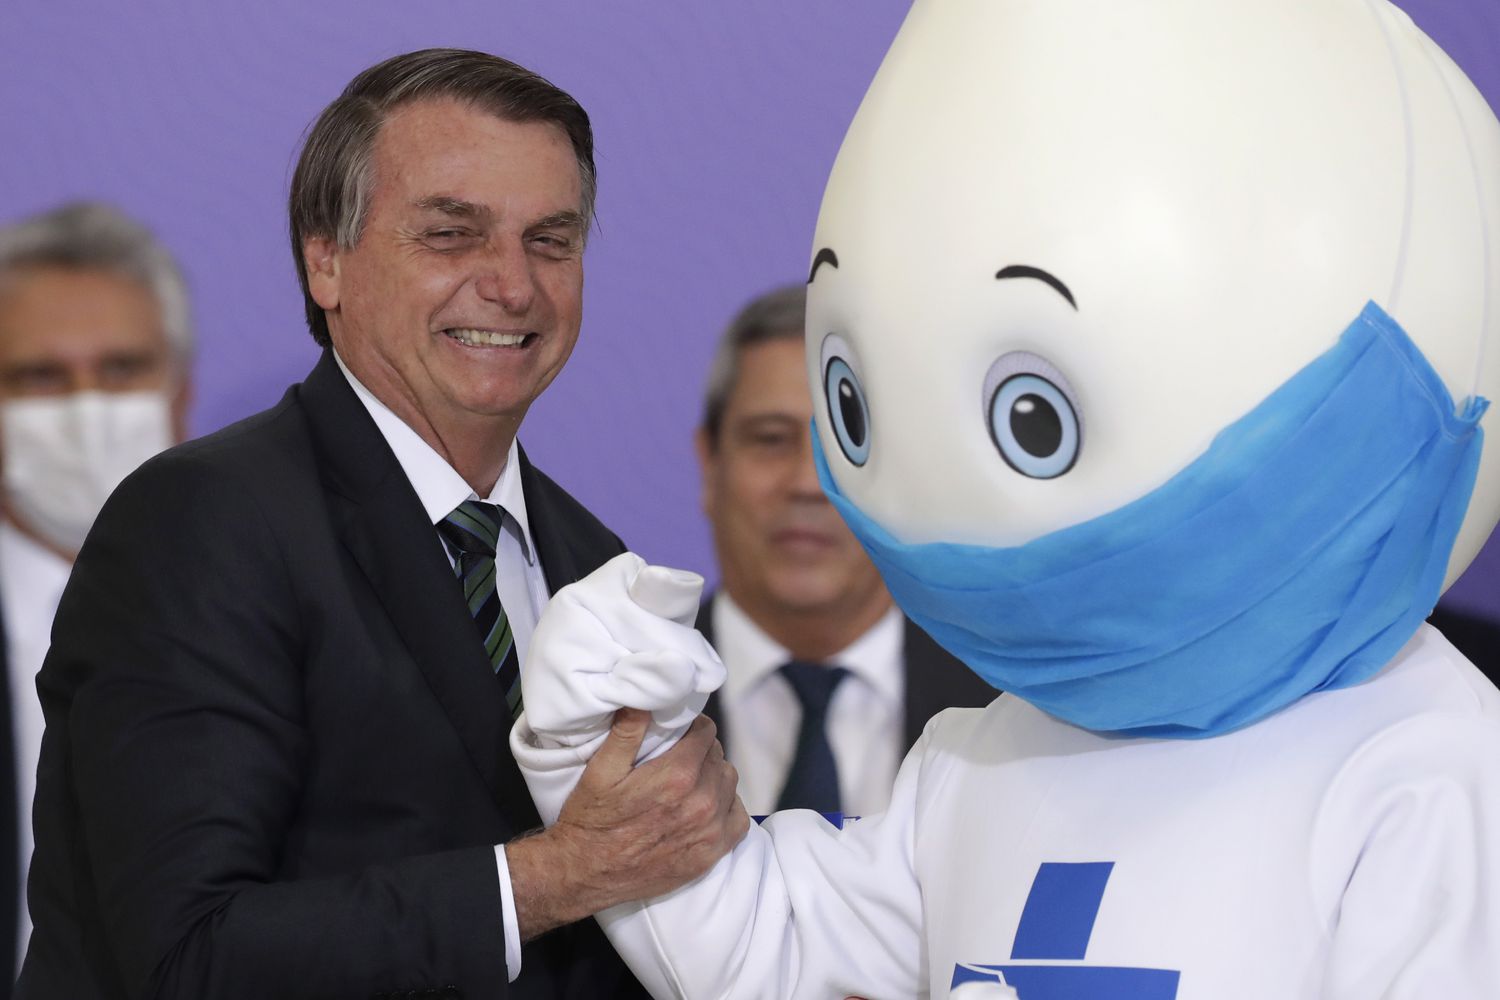 Bolsonaro segura o braço de Zé Gotinha em dezembro após mascote se negar a cumprimentá-lo com aperto de mão.